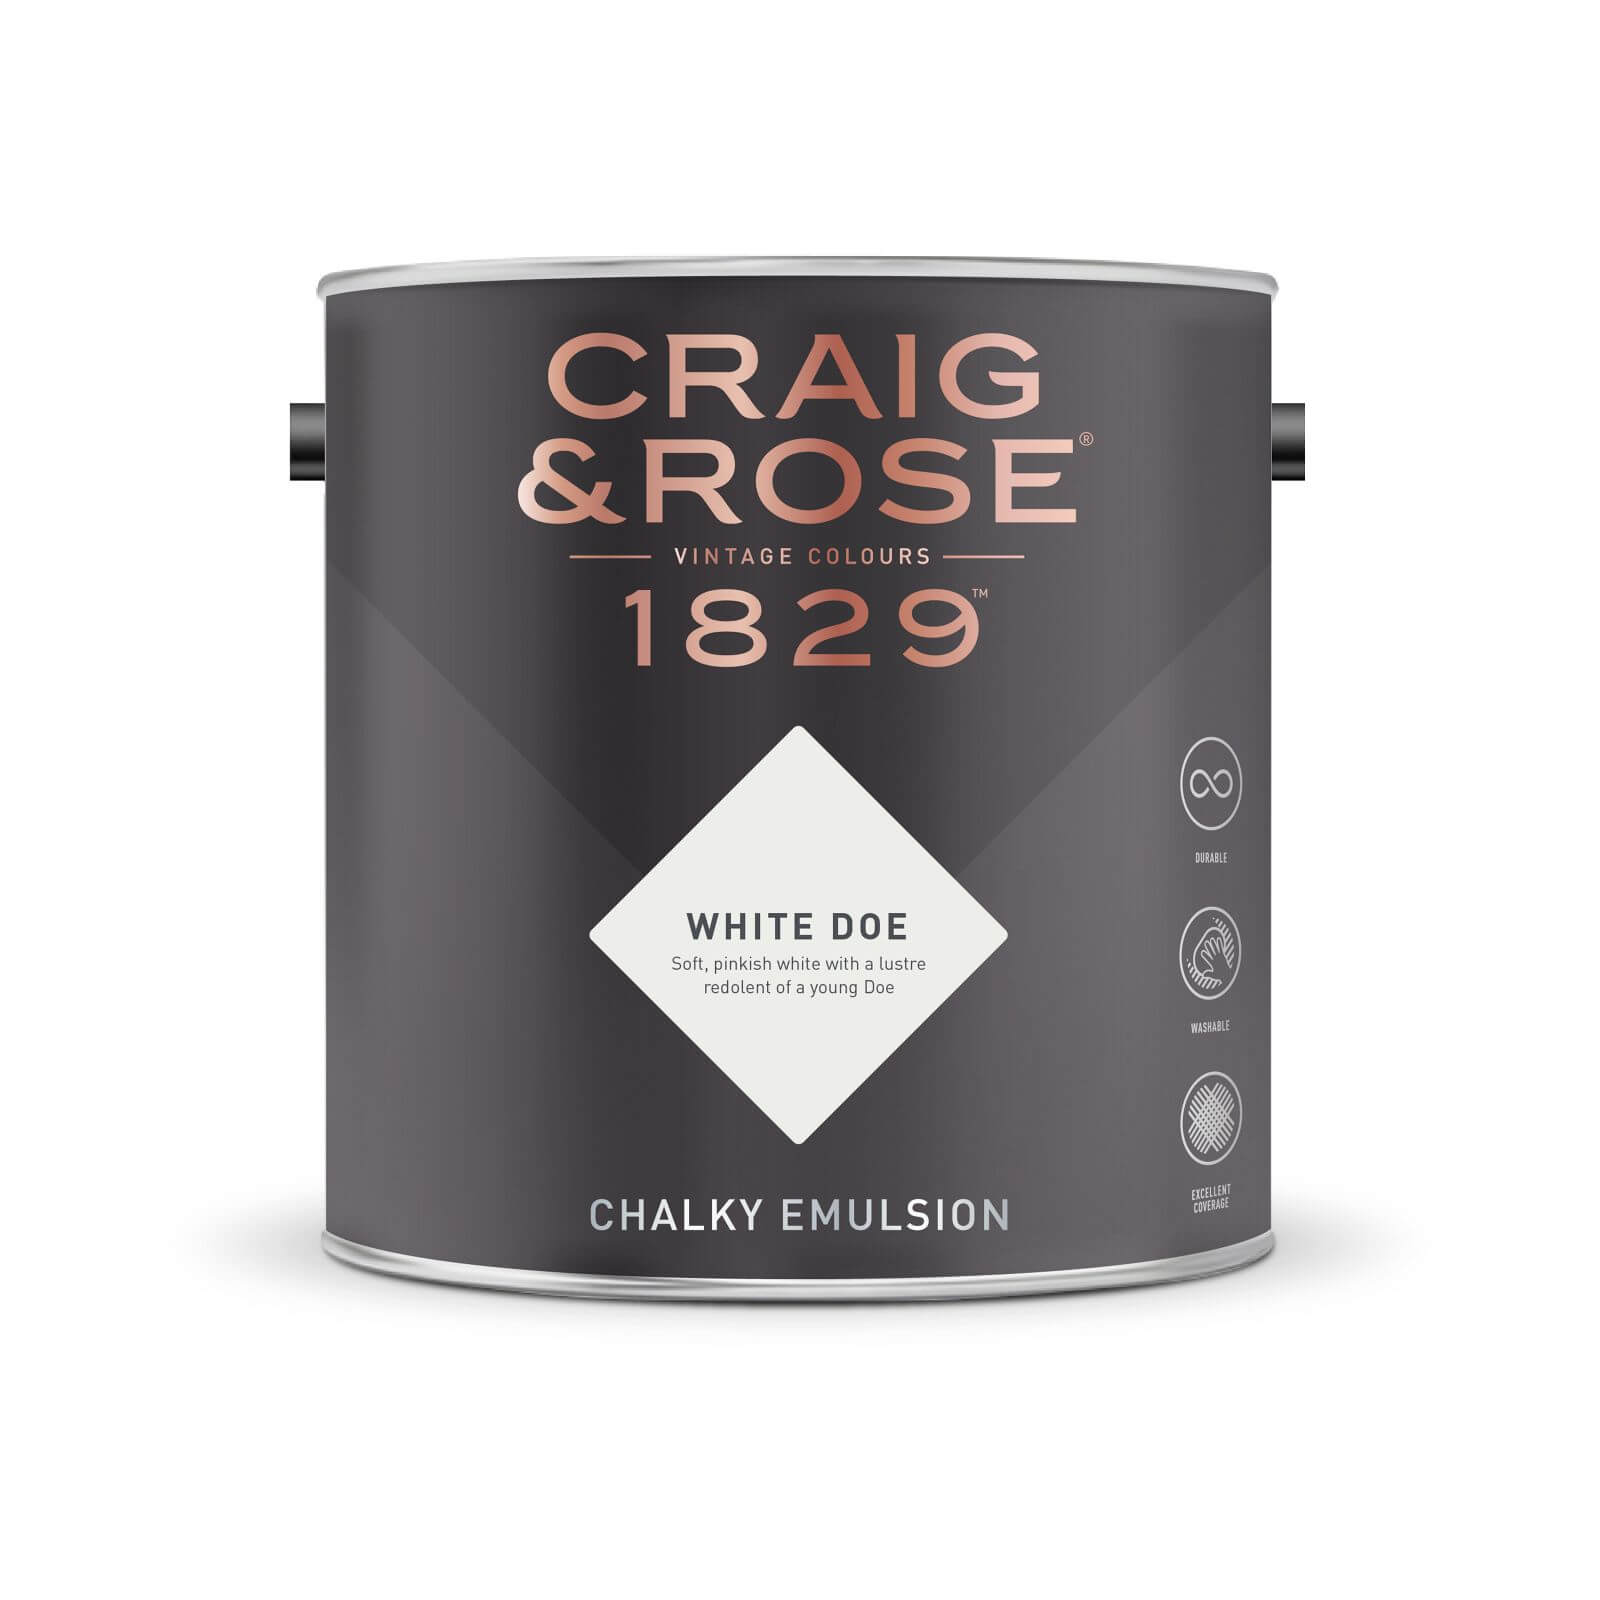 Craig & Rose 1829 Chalky Emulsion Paint White Doe - Tester 50ml